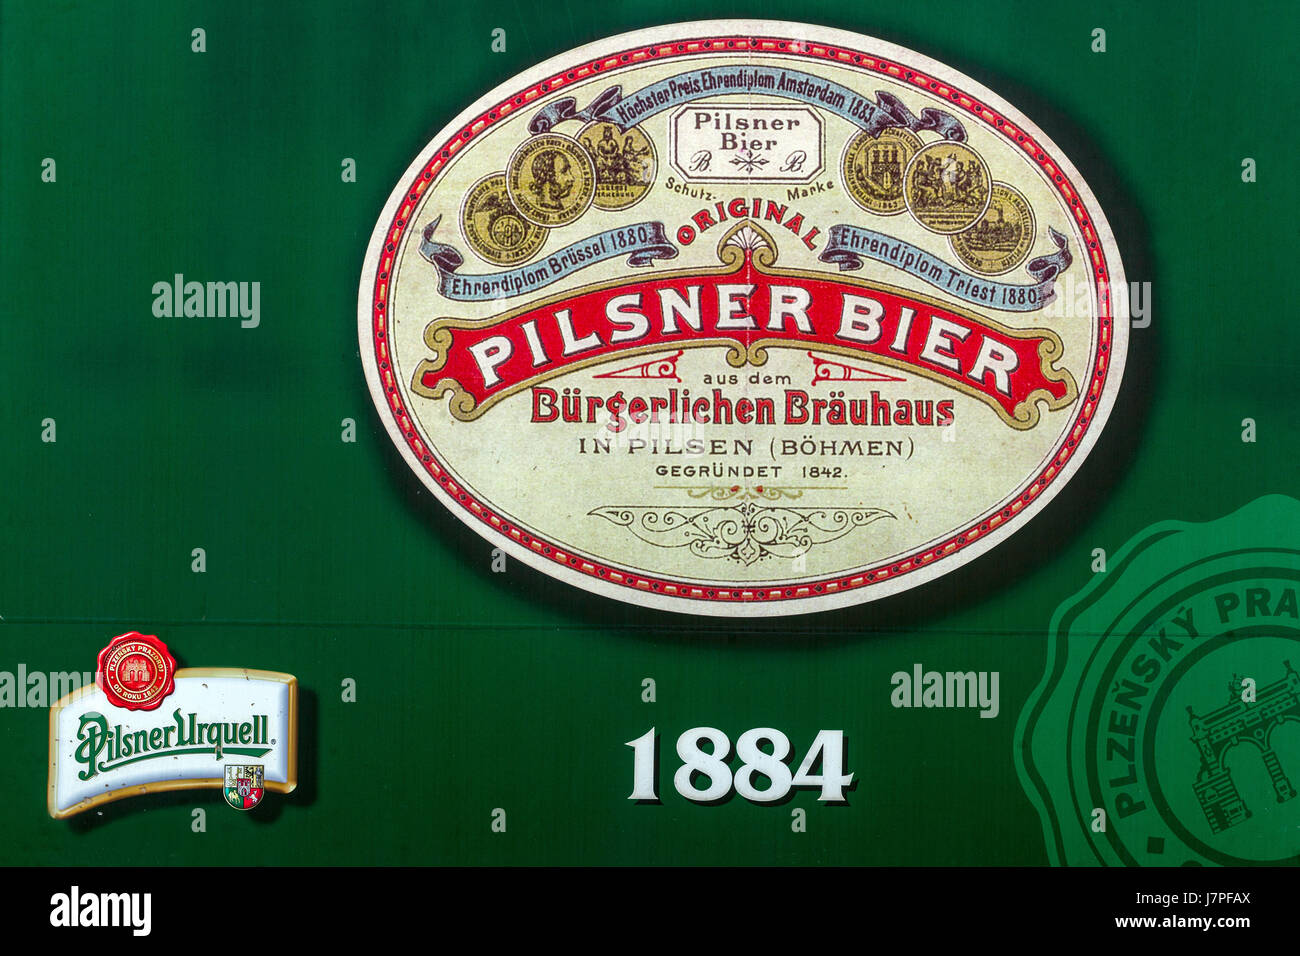 Geschichte der Marke Pilsner Brauerei Pilsner Urquell, Logo, aus dem Jahre 1884, westlichen Böhmen, Tschechische Republik, Plzen, Europ Stockfoto